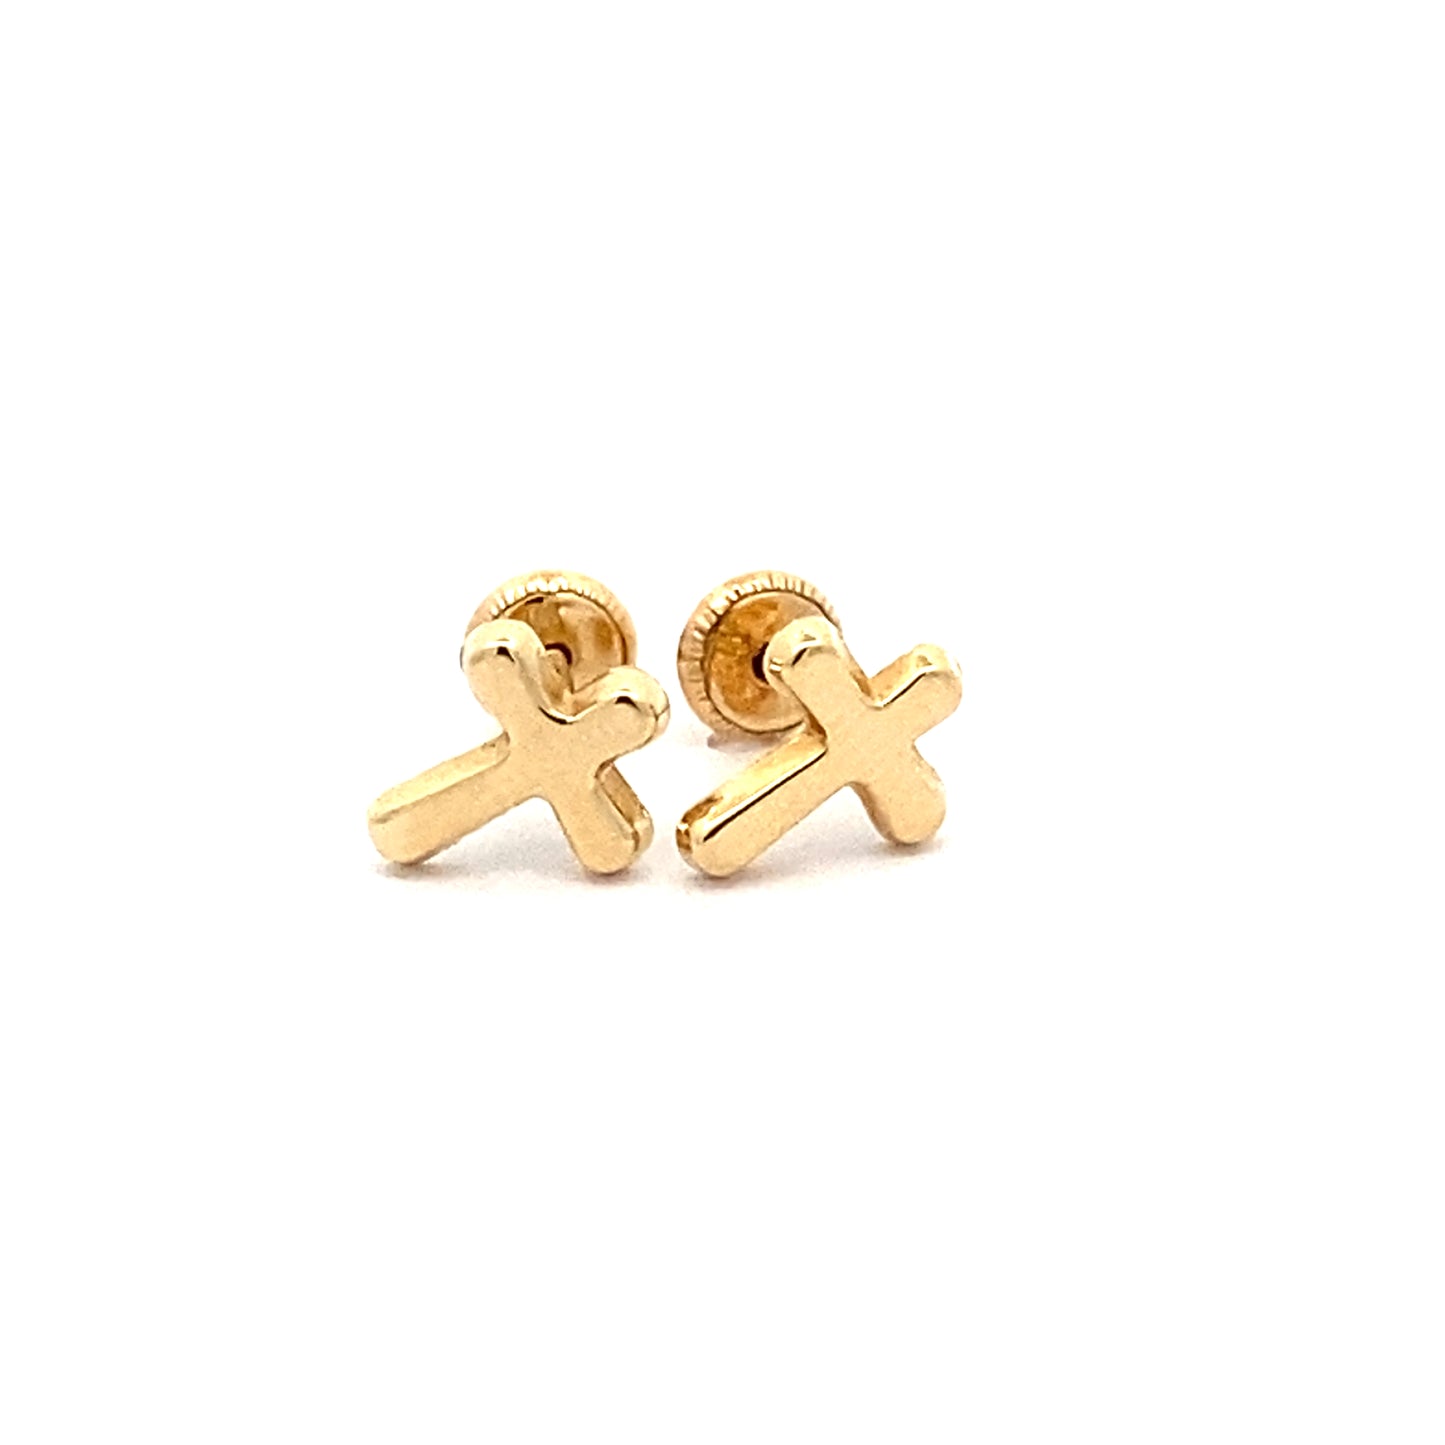 14K Yellow Gold Cross Stud Earrings